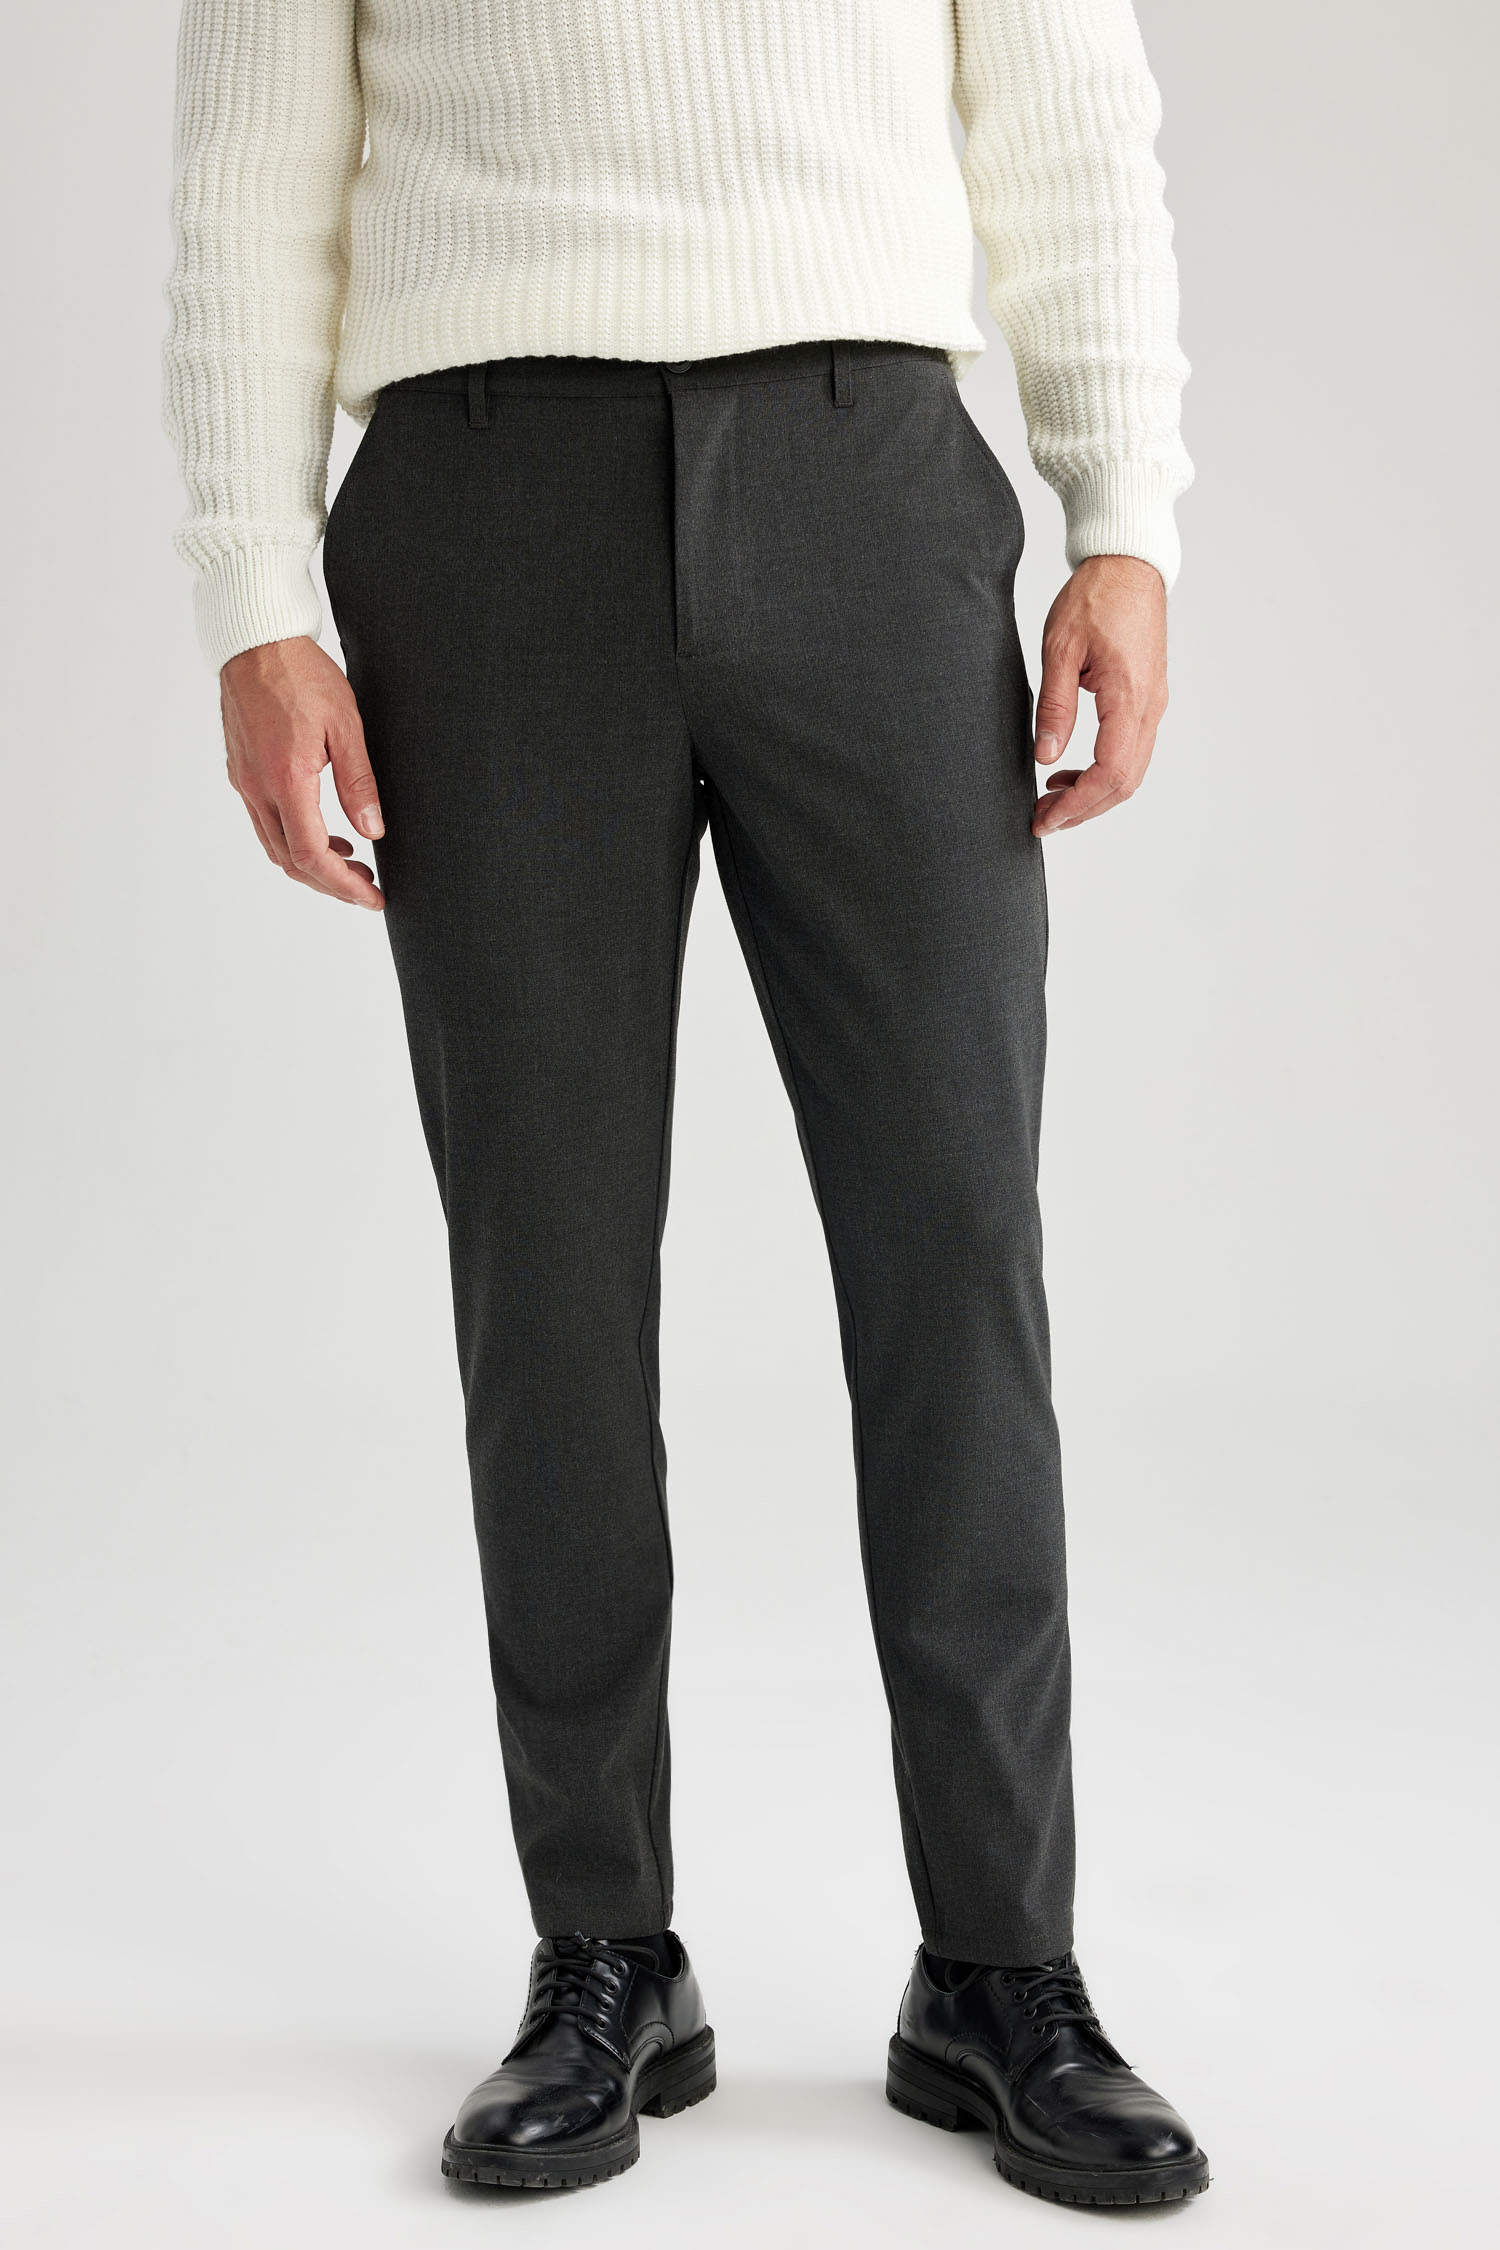 Trousers For Men - Buy Formal Pants for Men Online | Zodiac